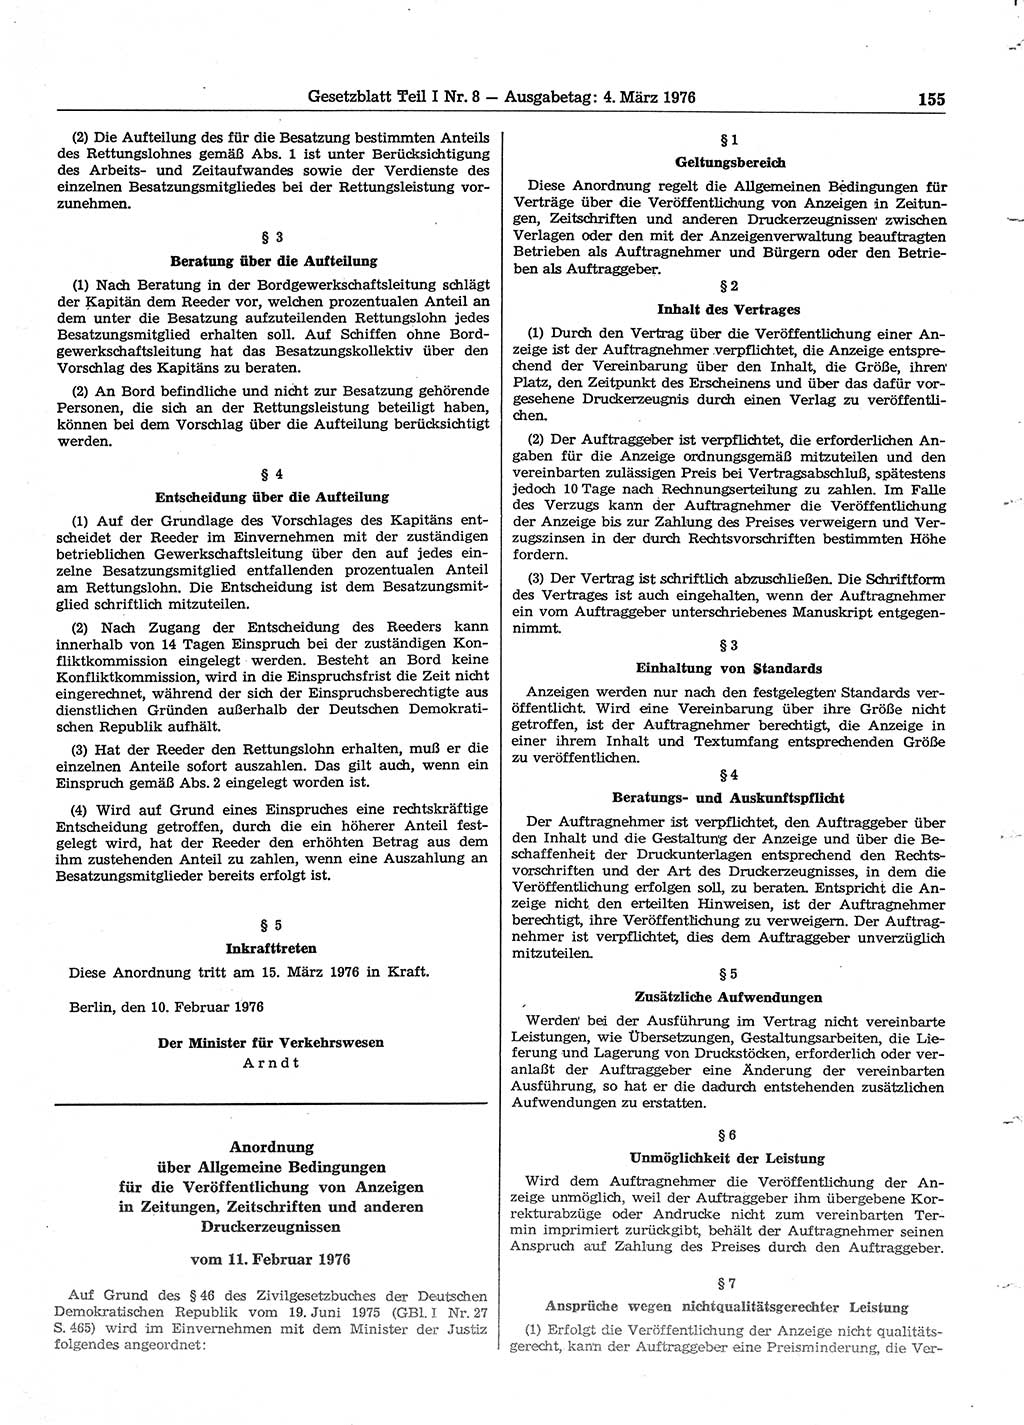 Gesetzblatt (GBl.) der Deutschen Demokratischen Republik (DDR) Teil Ⅰ 1976, Seite 155 (GBl. DDR Ⅰ 1976, S. 155)